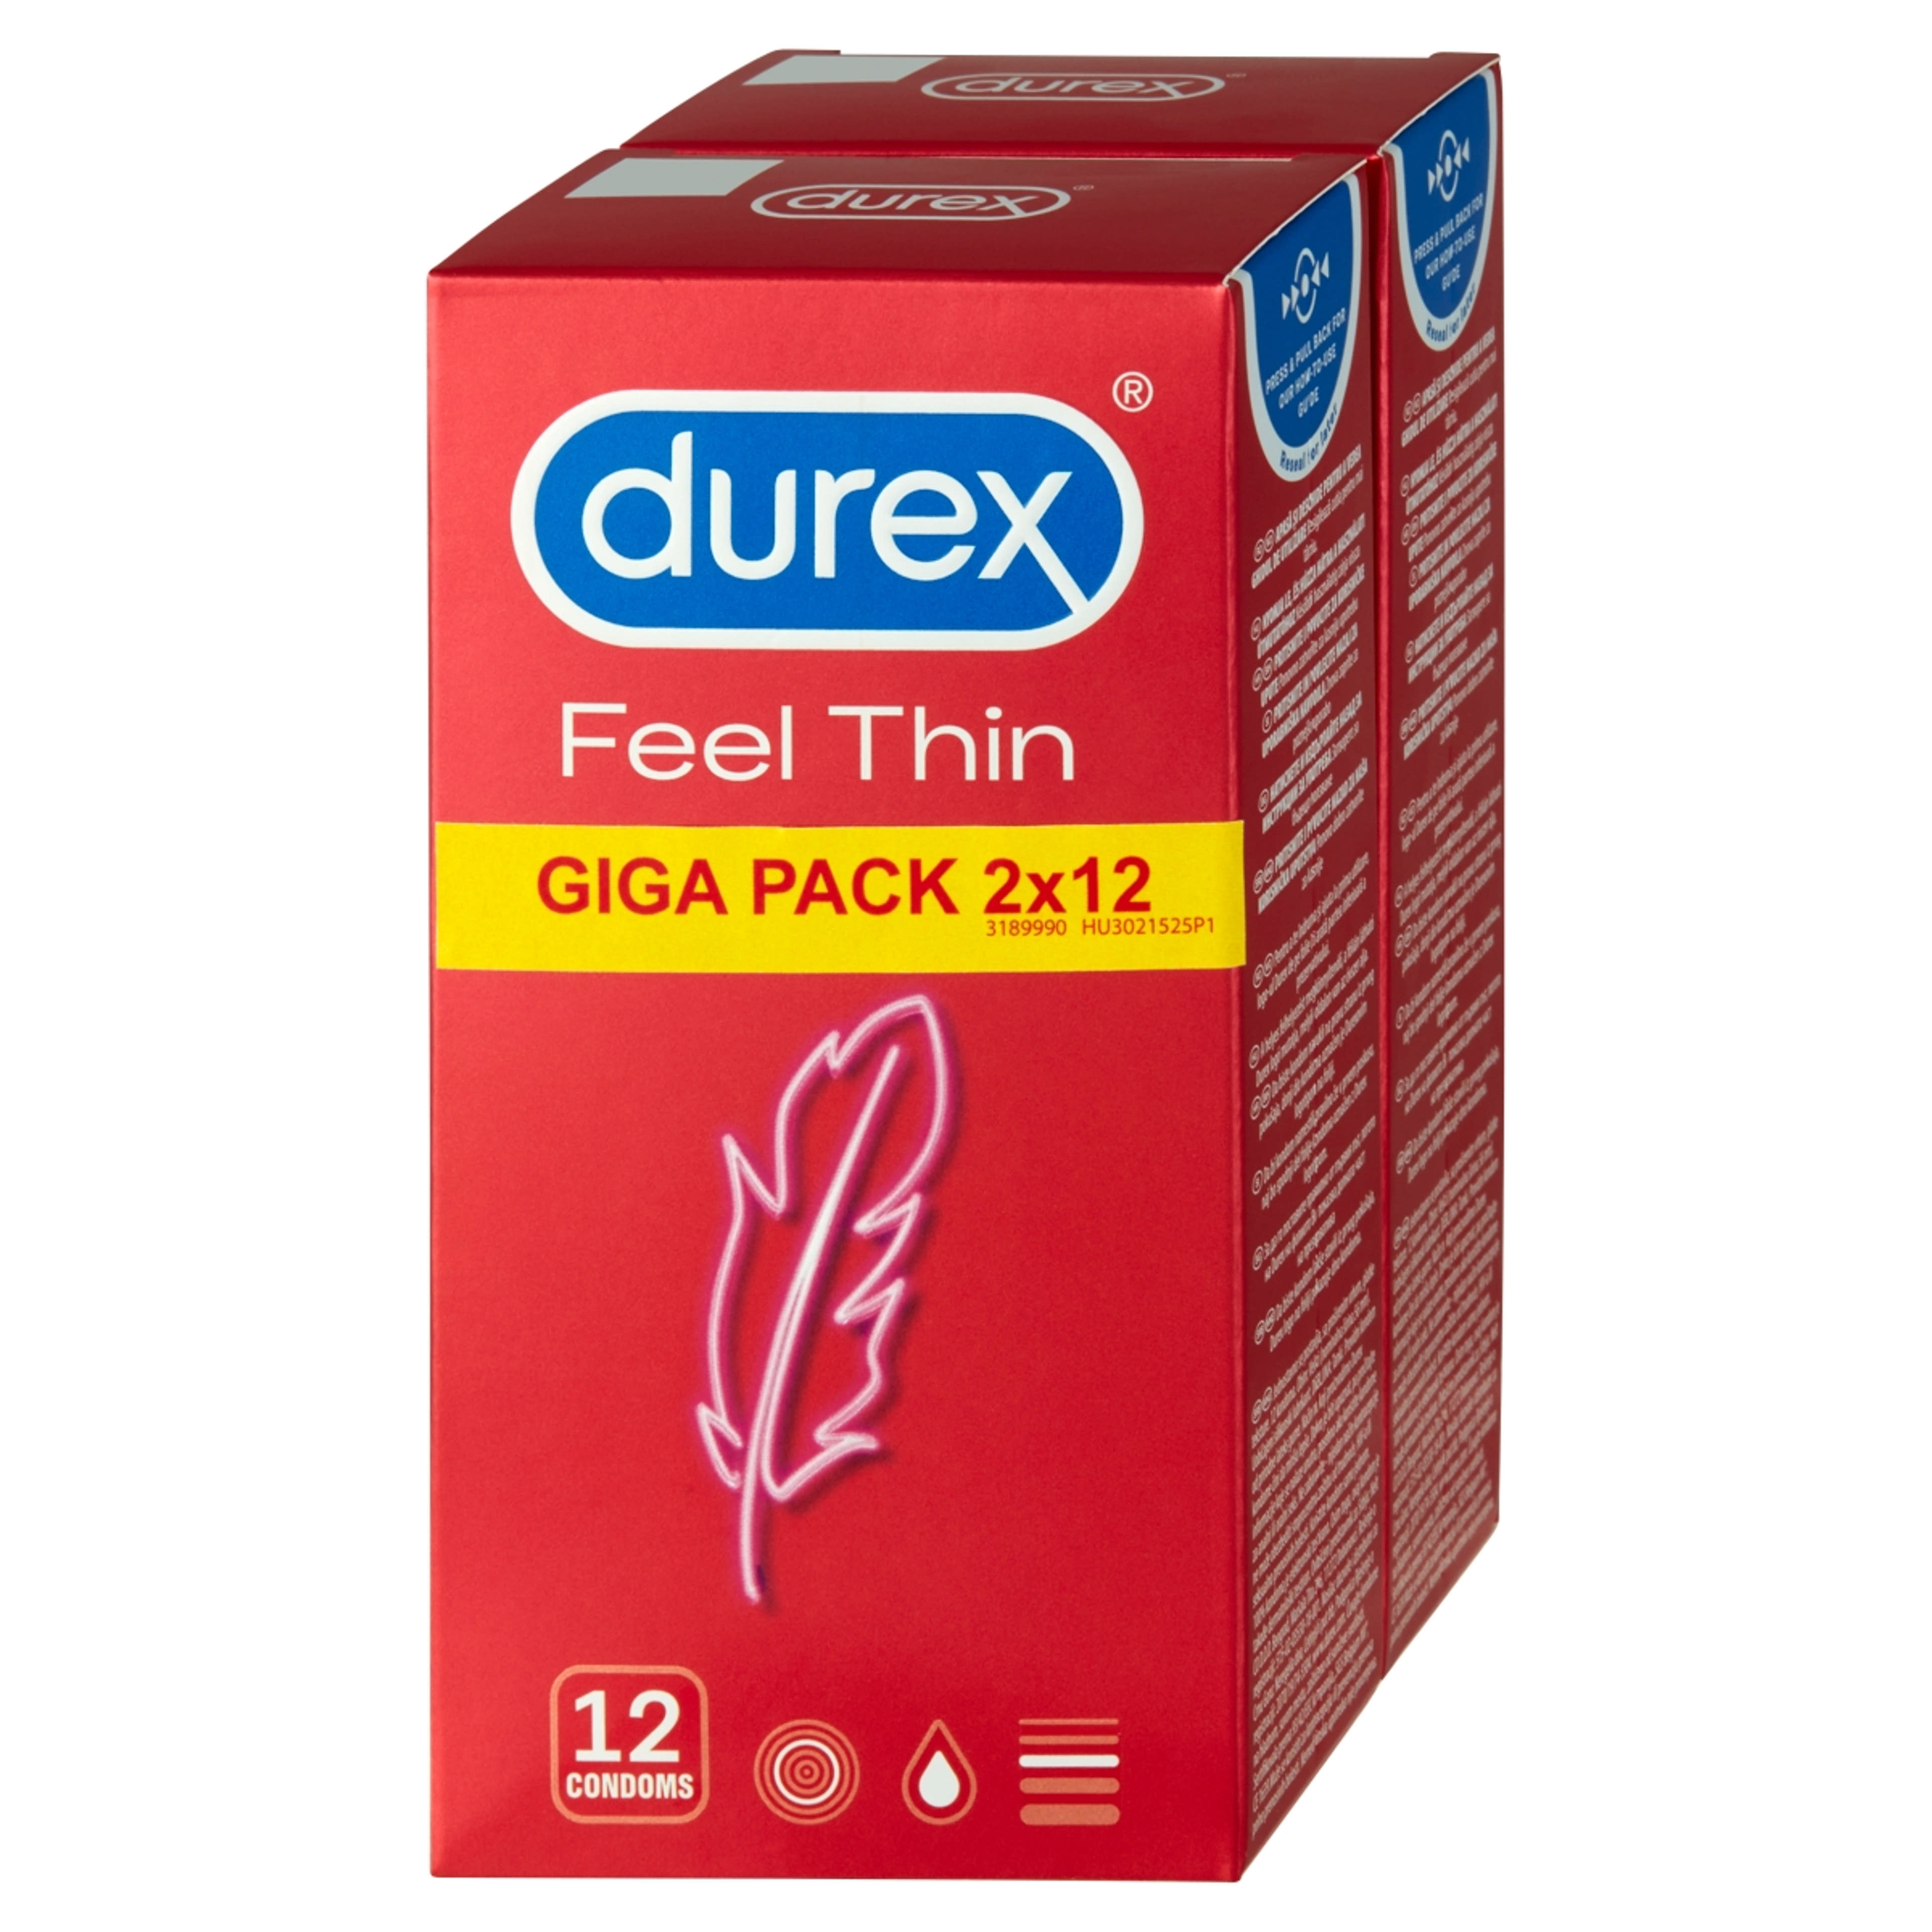 Durex óvszer feel thin (2x12) - 1 db-4